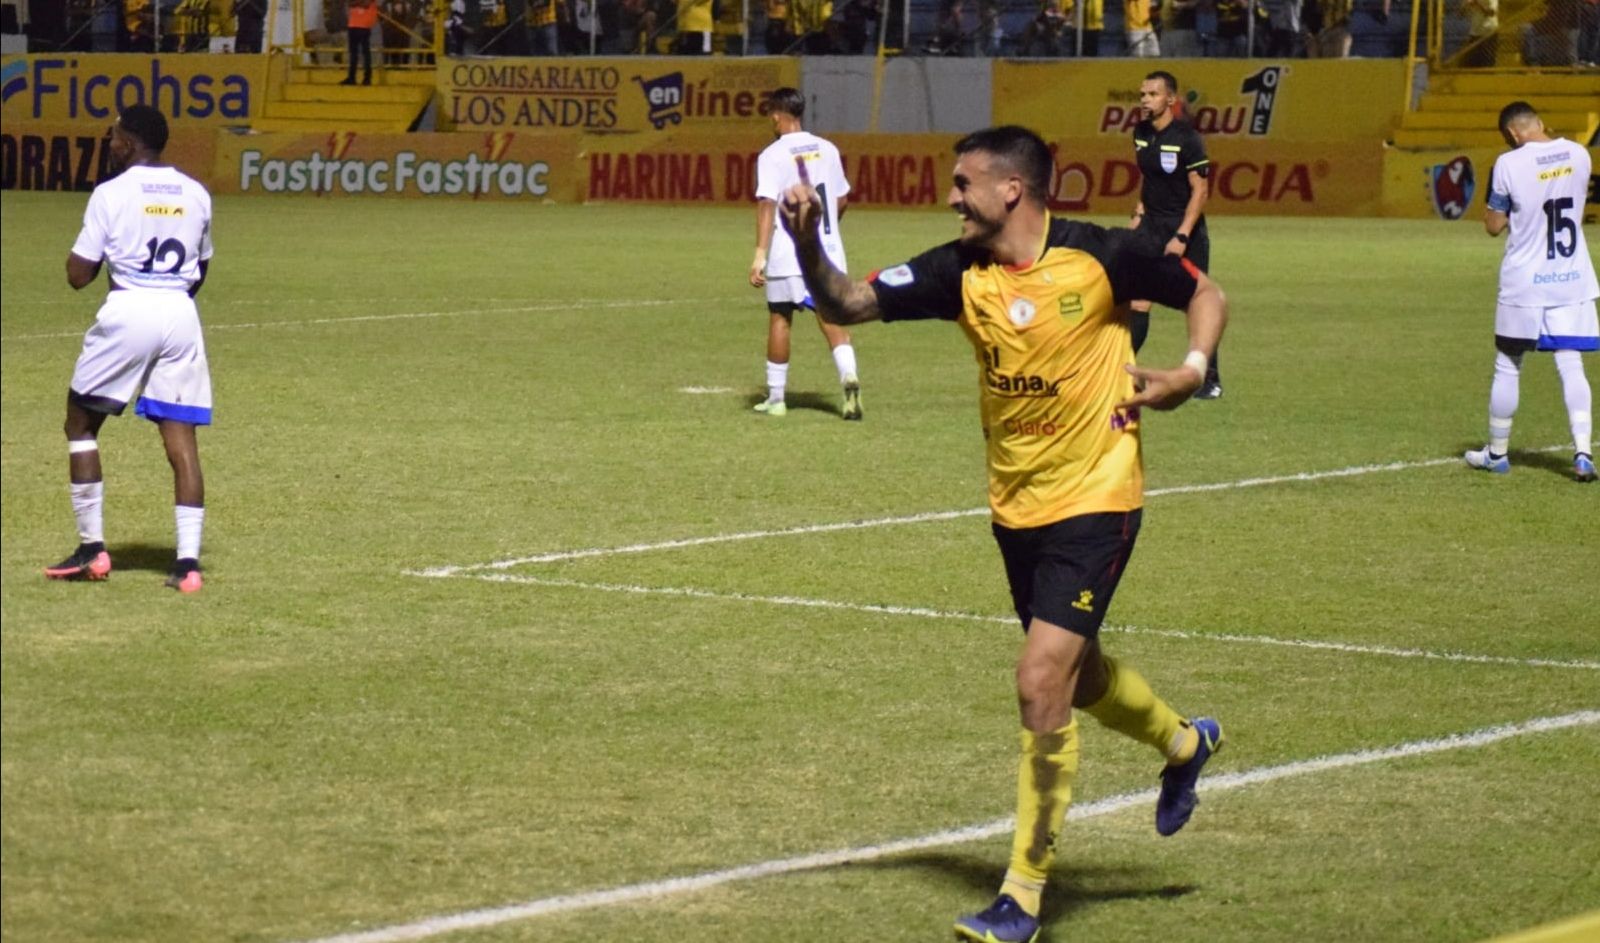 Vídeo: Real España golea al Honduras Progreso en otra gran noche de Rocca